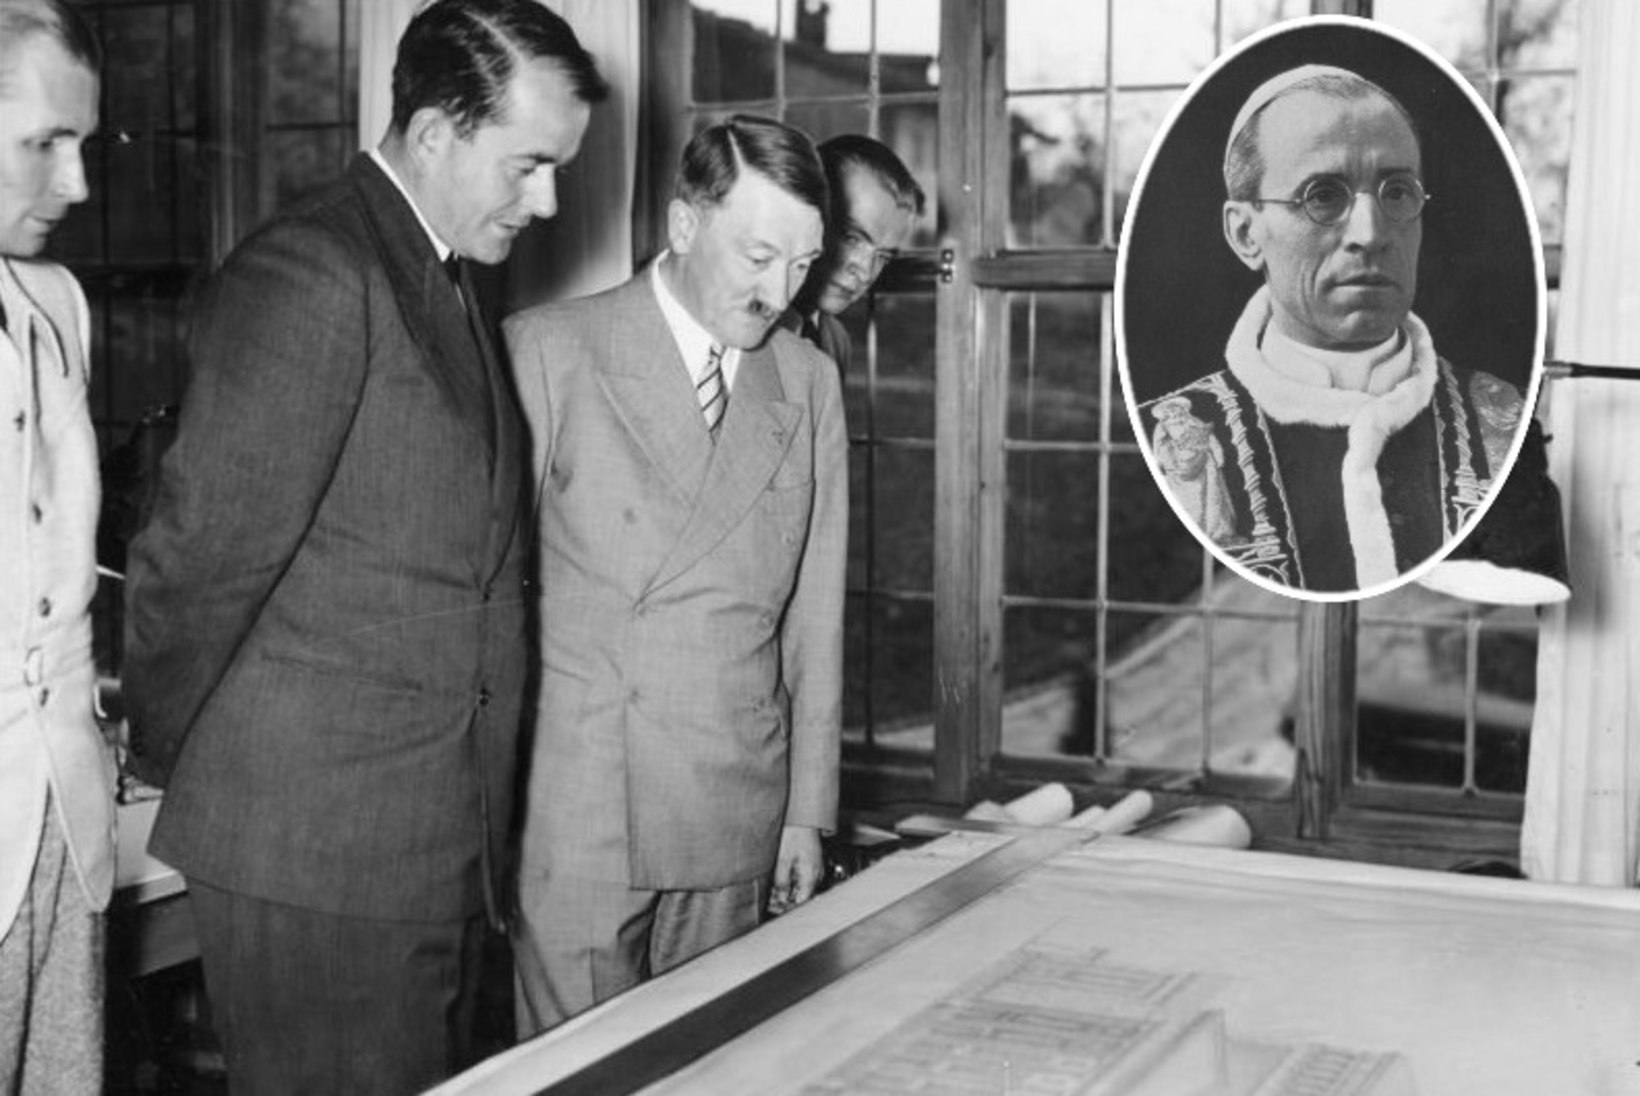 PÖÖRANE KAVATSUS: Hitleri peas tärkas sõja ajal plaan röövida Rooma paavst